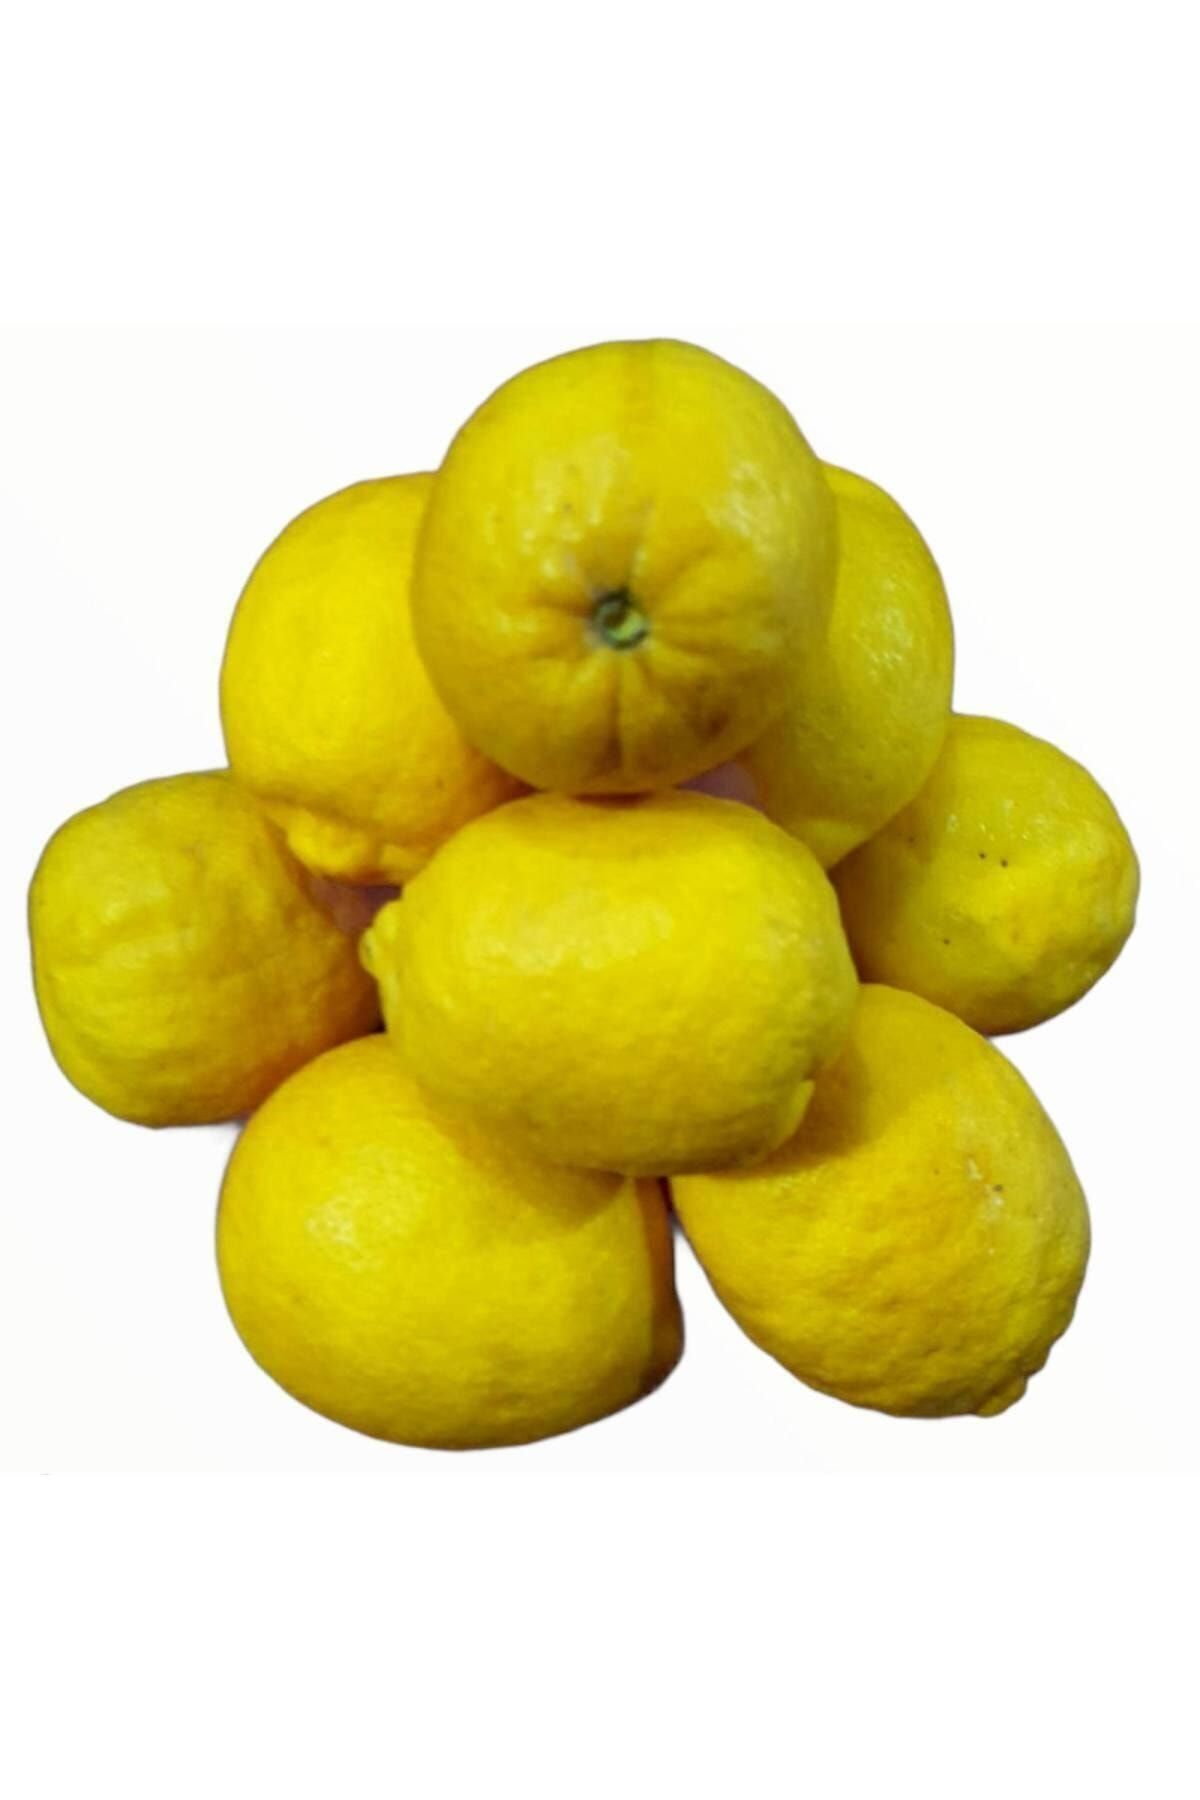 Alanya Özlem Limon Taptaze Bol Sulu ( En Az 5kg)